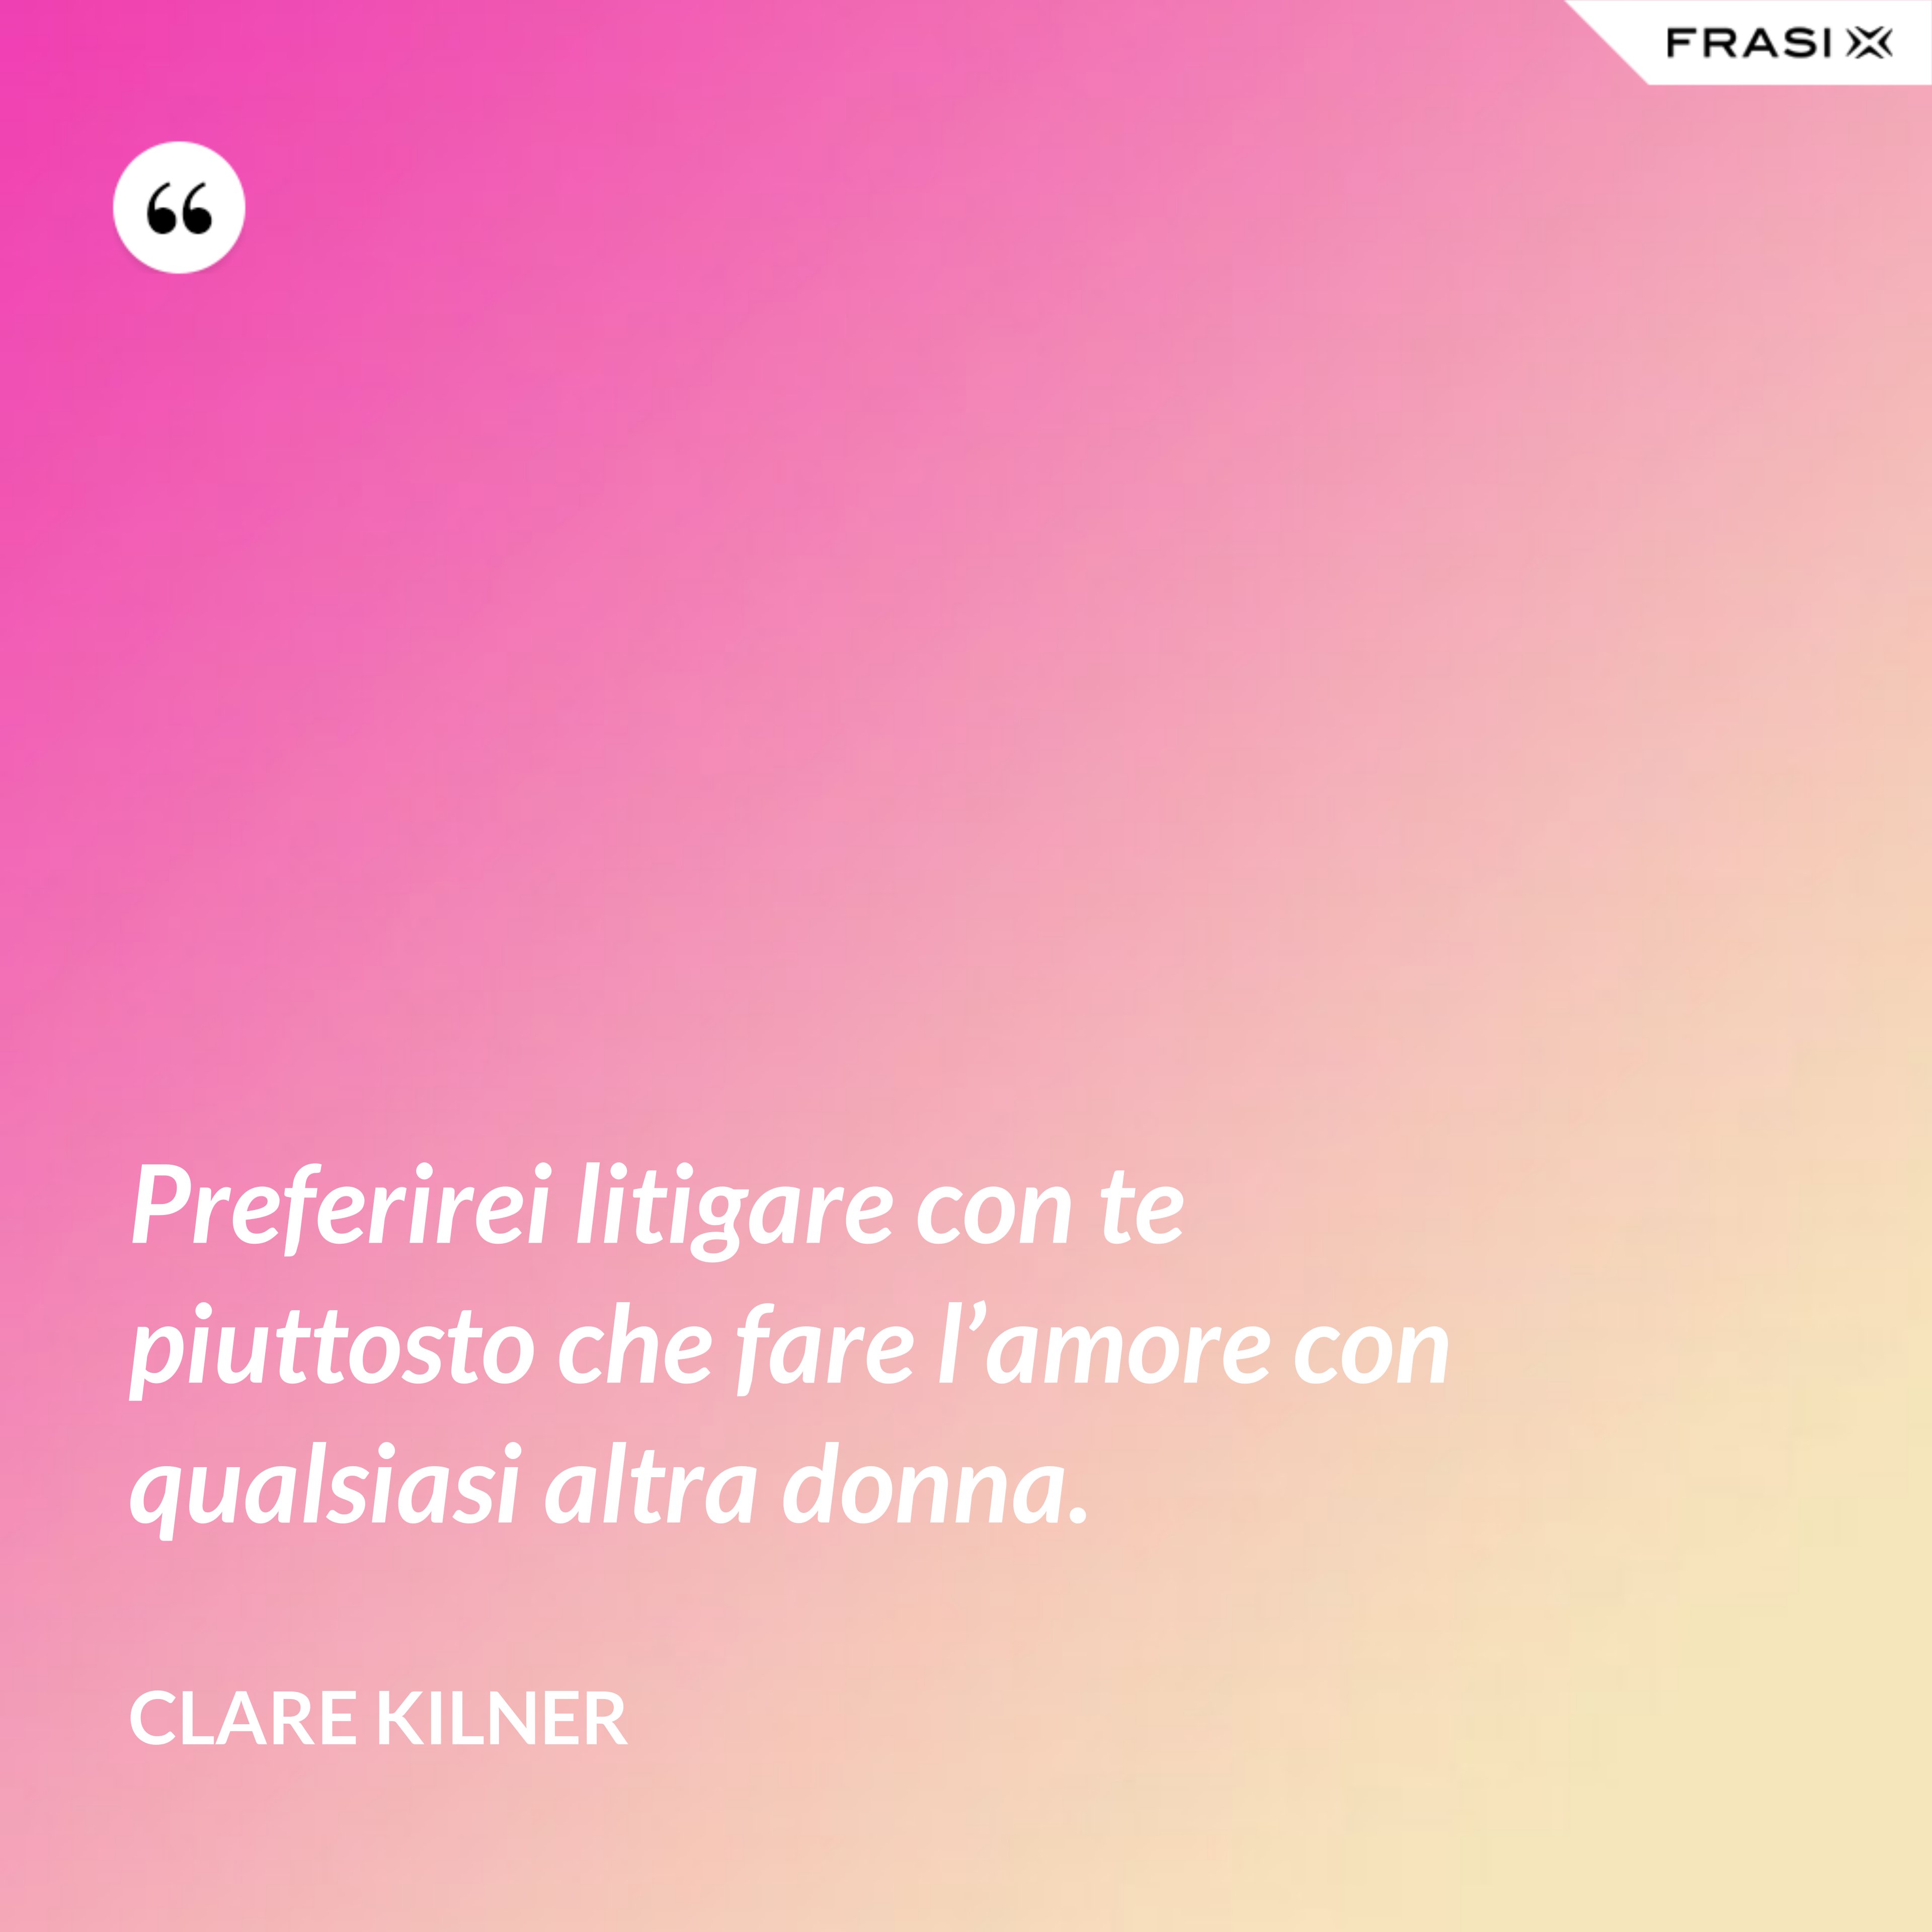 Preferirei litigare con te piuttosto che fare l’amore con qualsiasi altra donna. - Clare Kilner